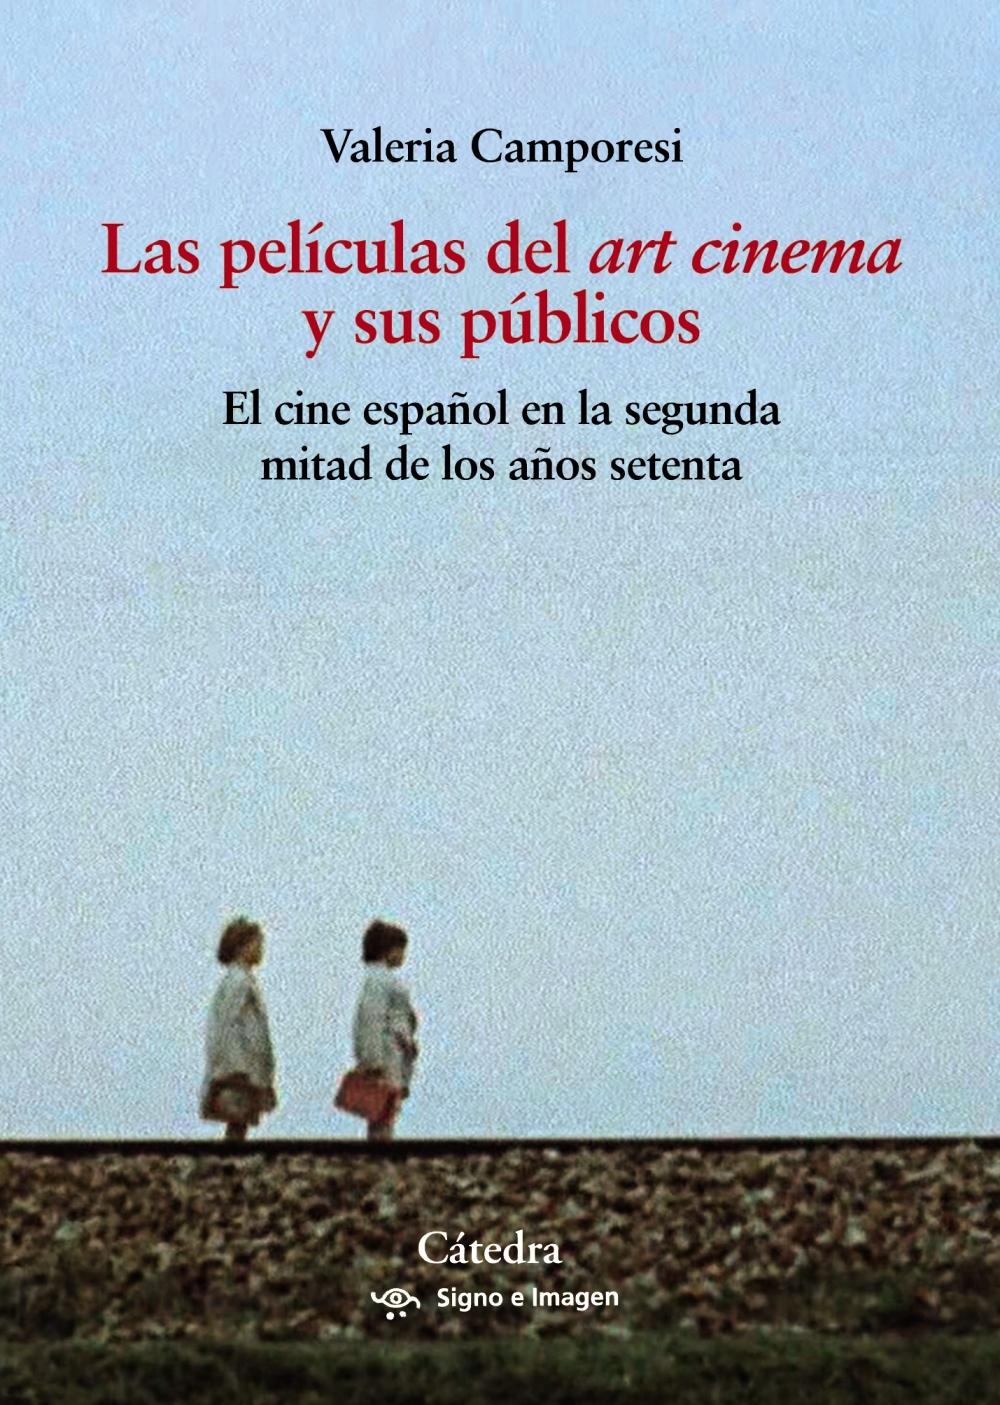 Las Películas del "Art Cinema" y sus Públicos "El Cine Español en la Segunda Mitad de los Años Setenta"